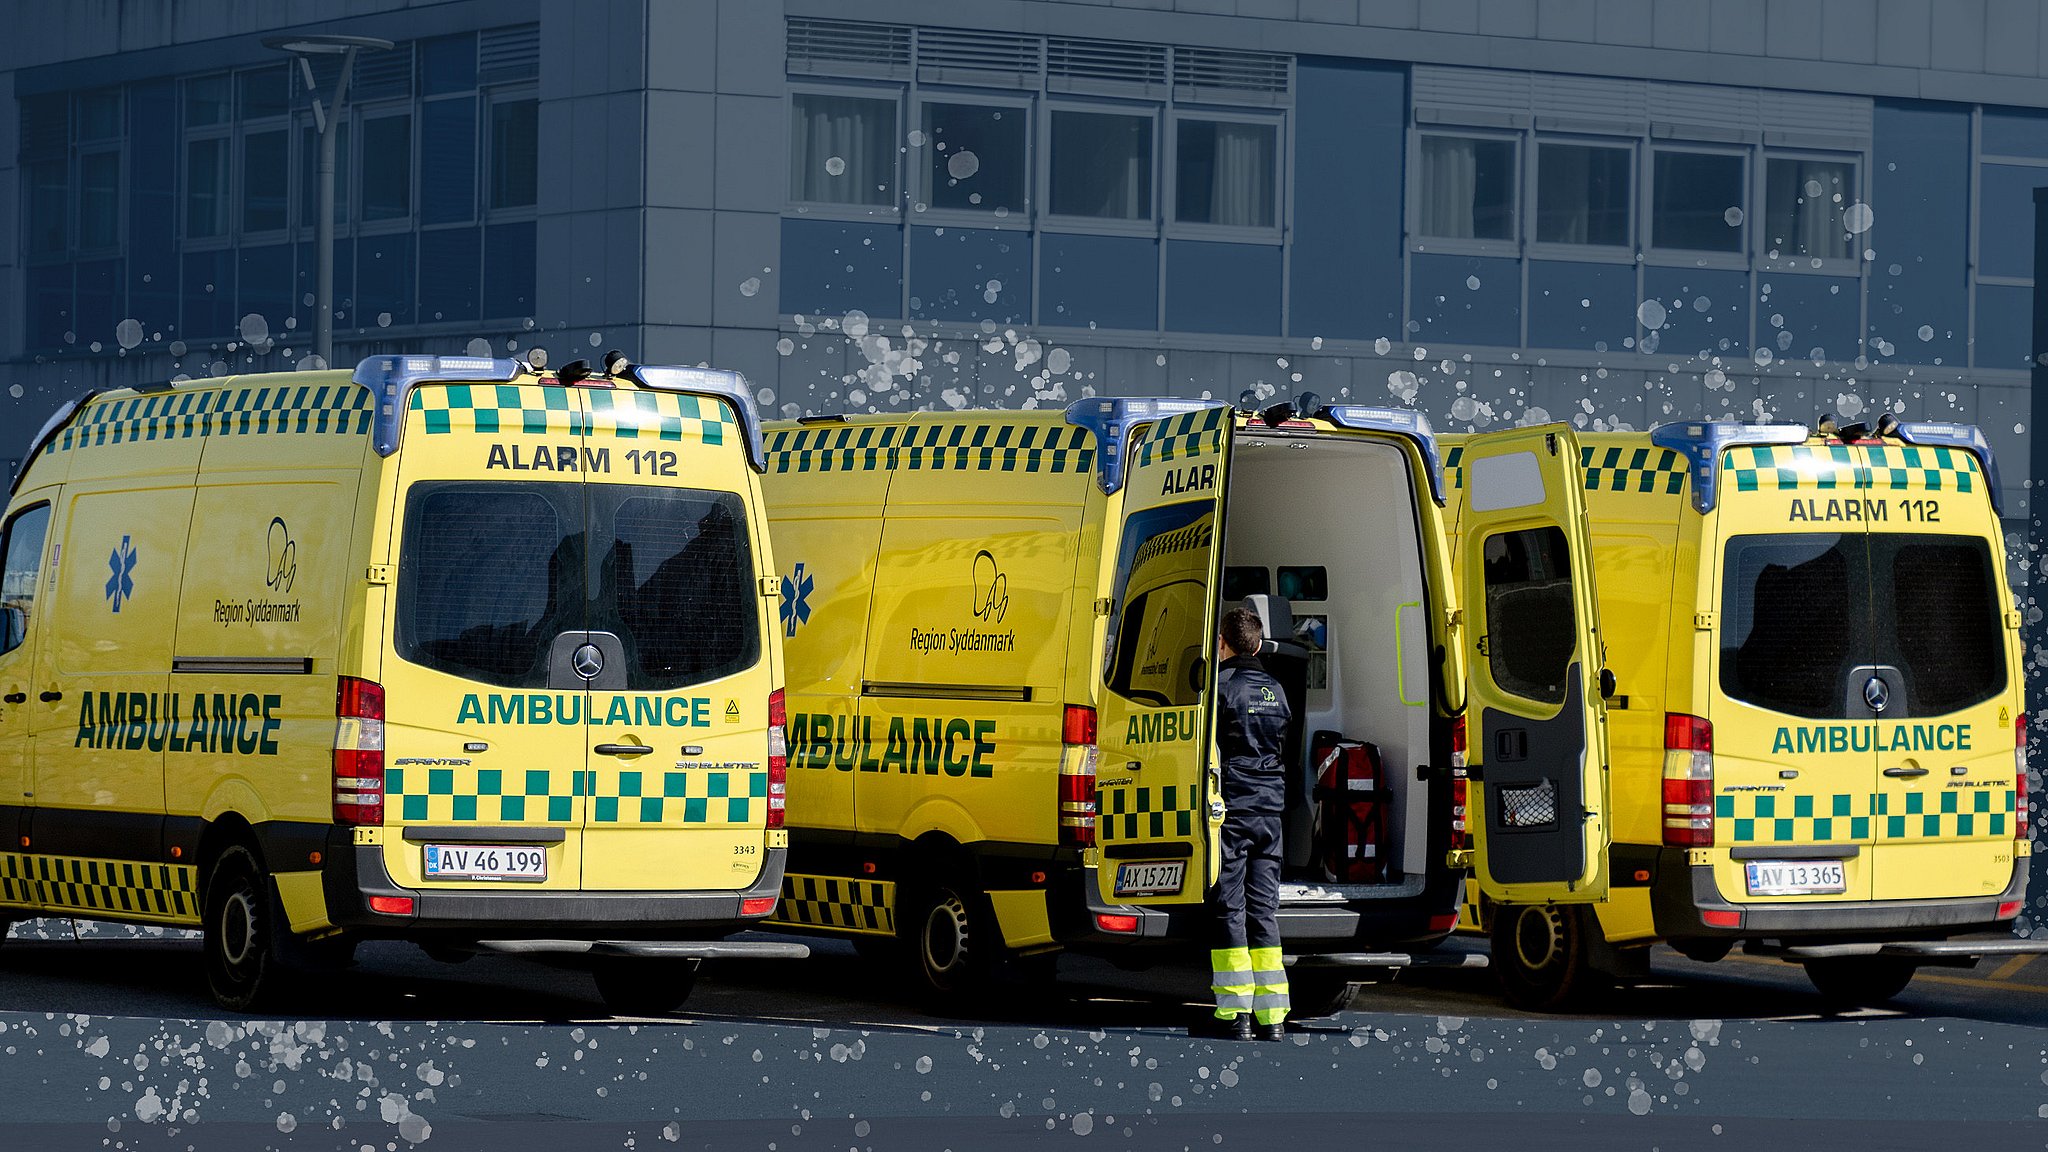 EU-regler tvinger ambulancer Fyn til at holde stille: - Det er dybt uretfærdigt | TV2 Fyn